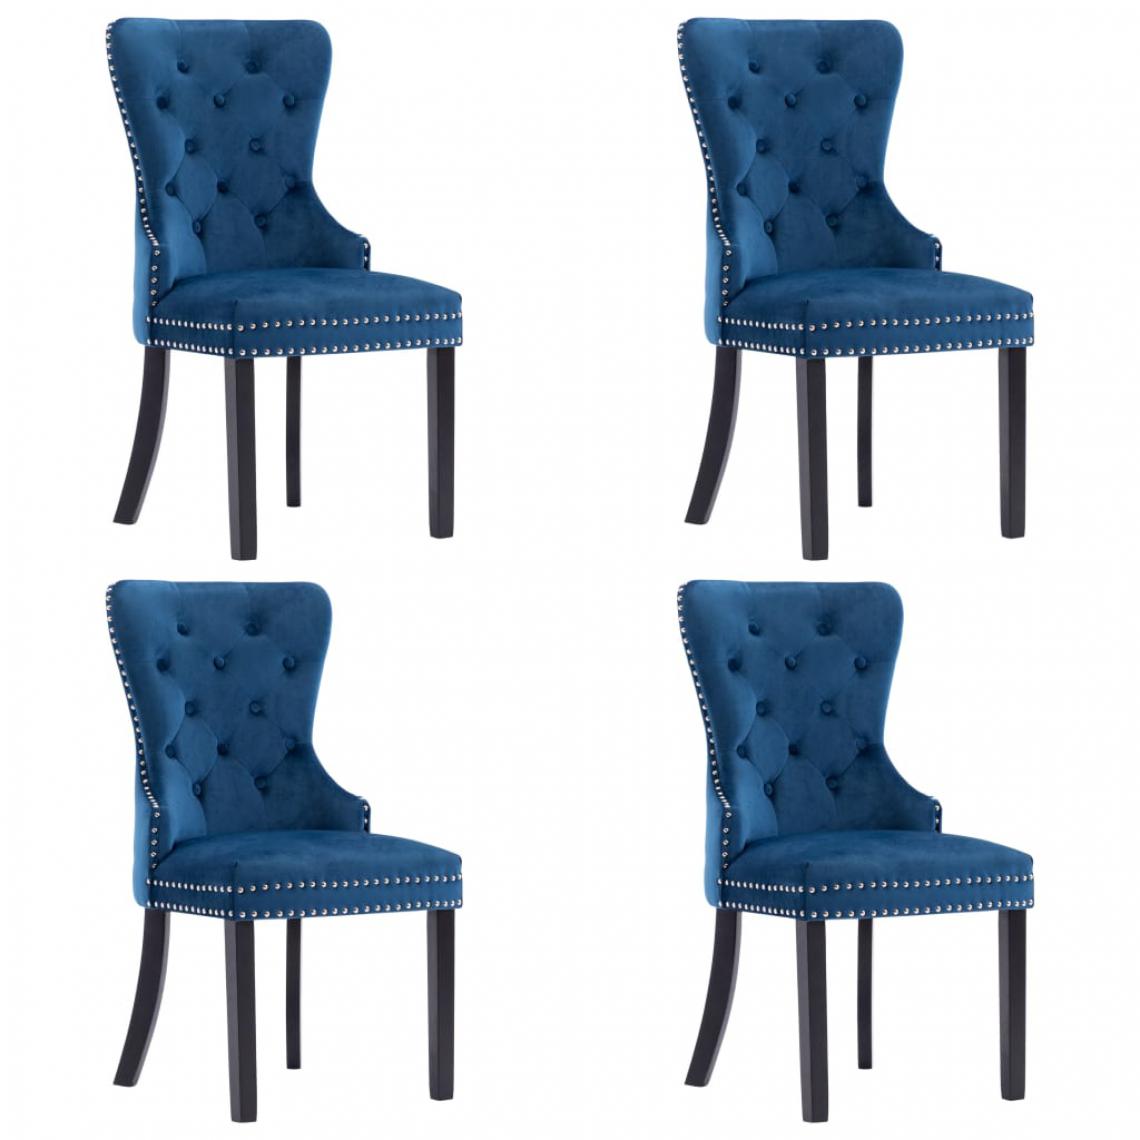 Icaverne - sublime Fauteuils et chaises collection Palikir Chaises de salle à manger 4 pcs Bleu Velours - Chaises